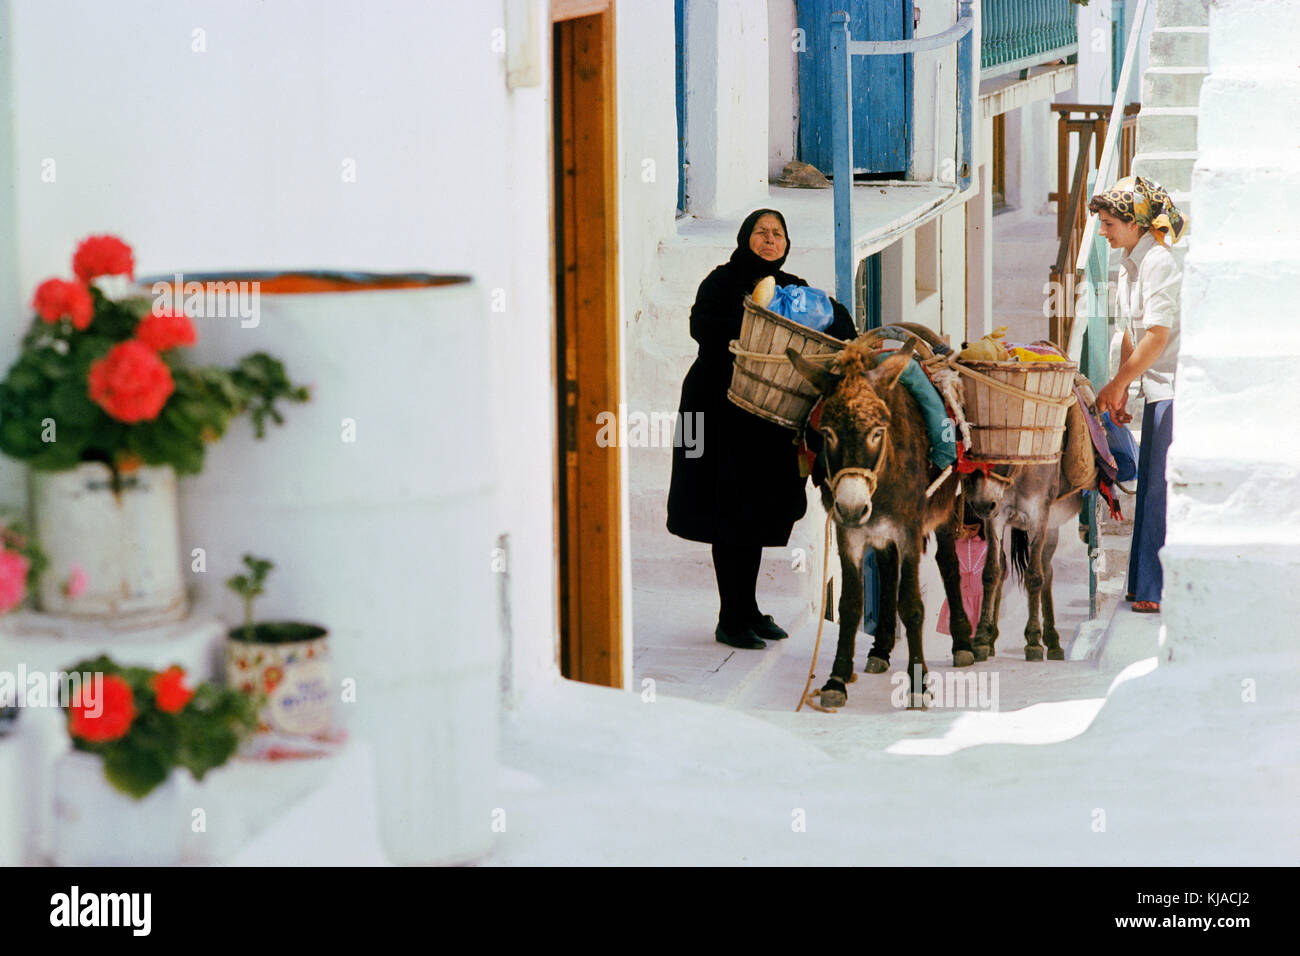 Mykonos Grèce maisons chaulées et étroites ruelles ombragées.avec l'âne de la vieille dame du marché . Banque D'Images